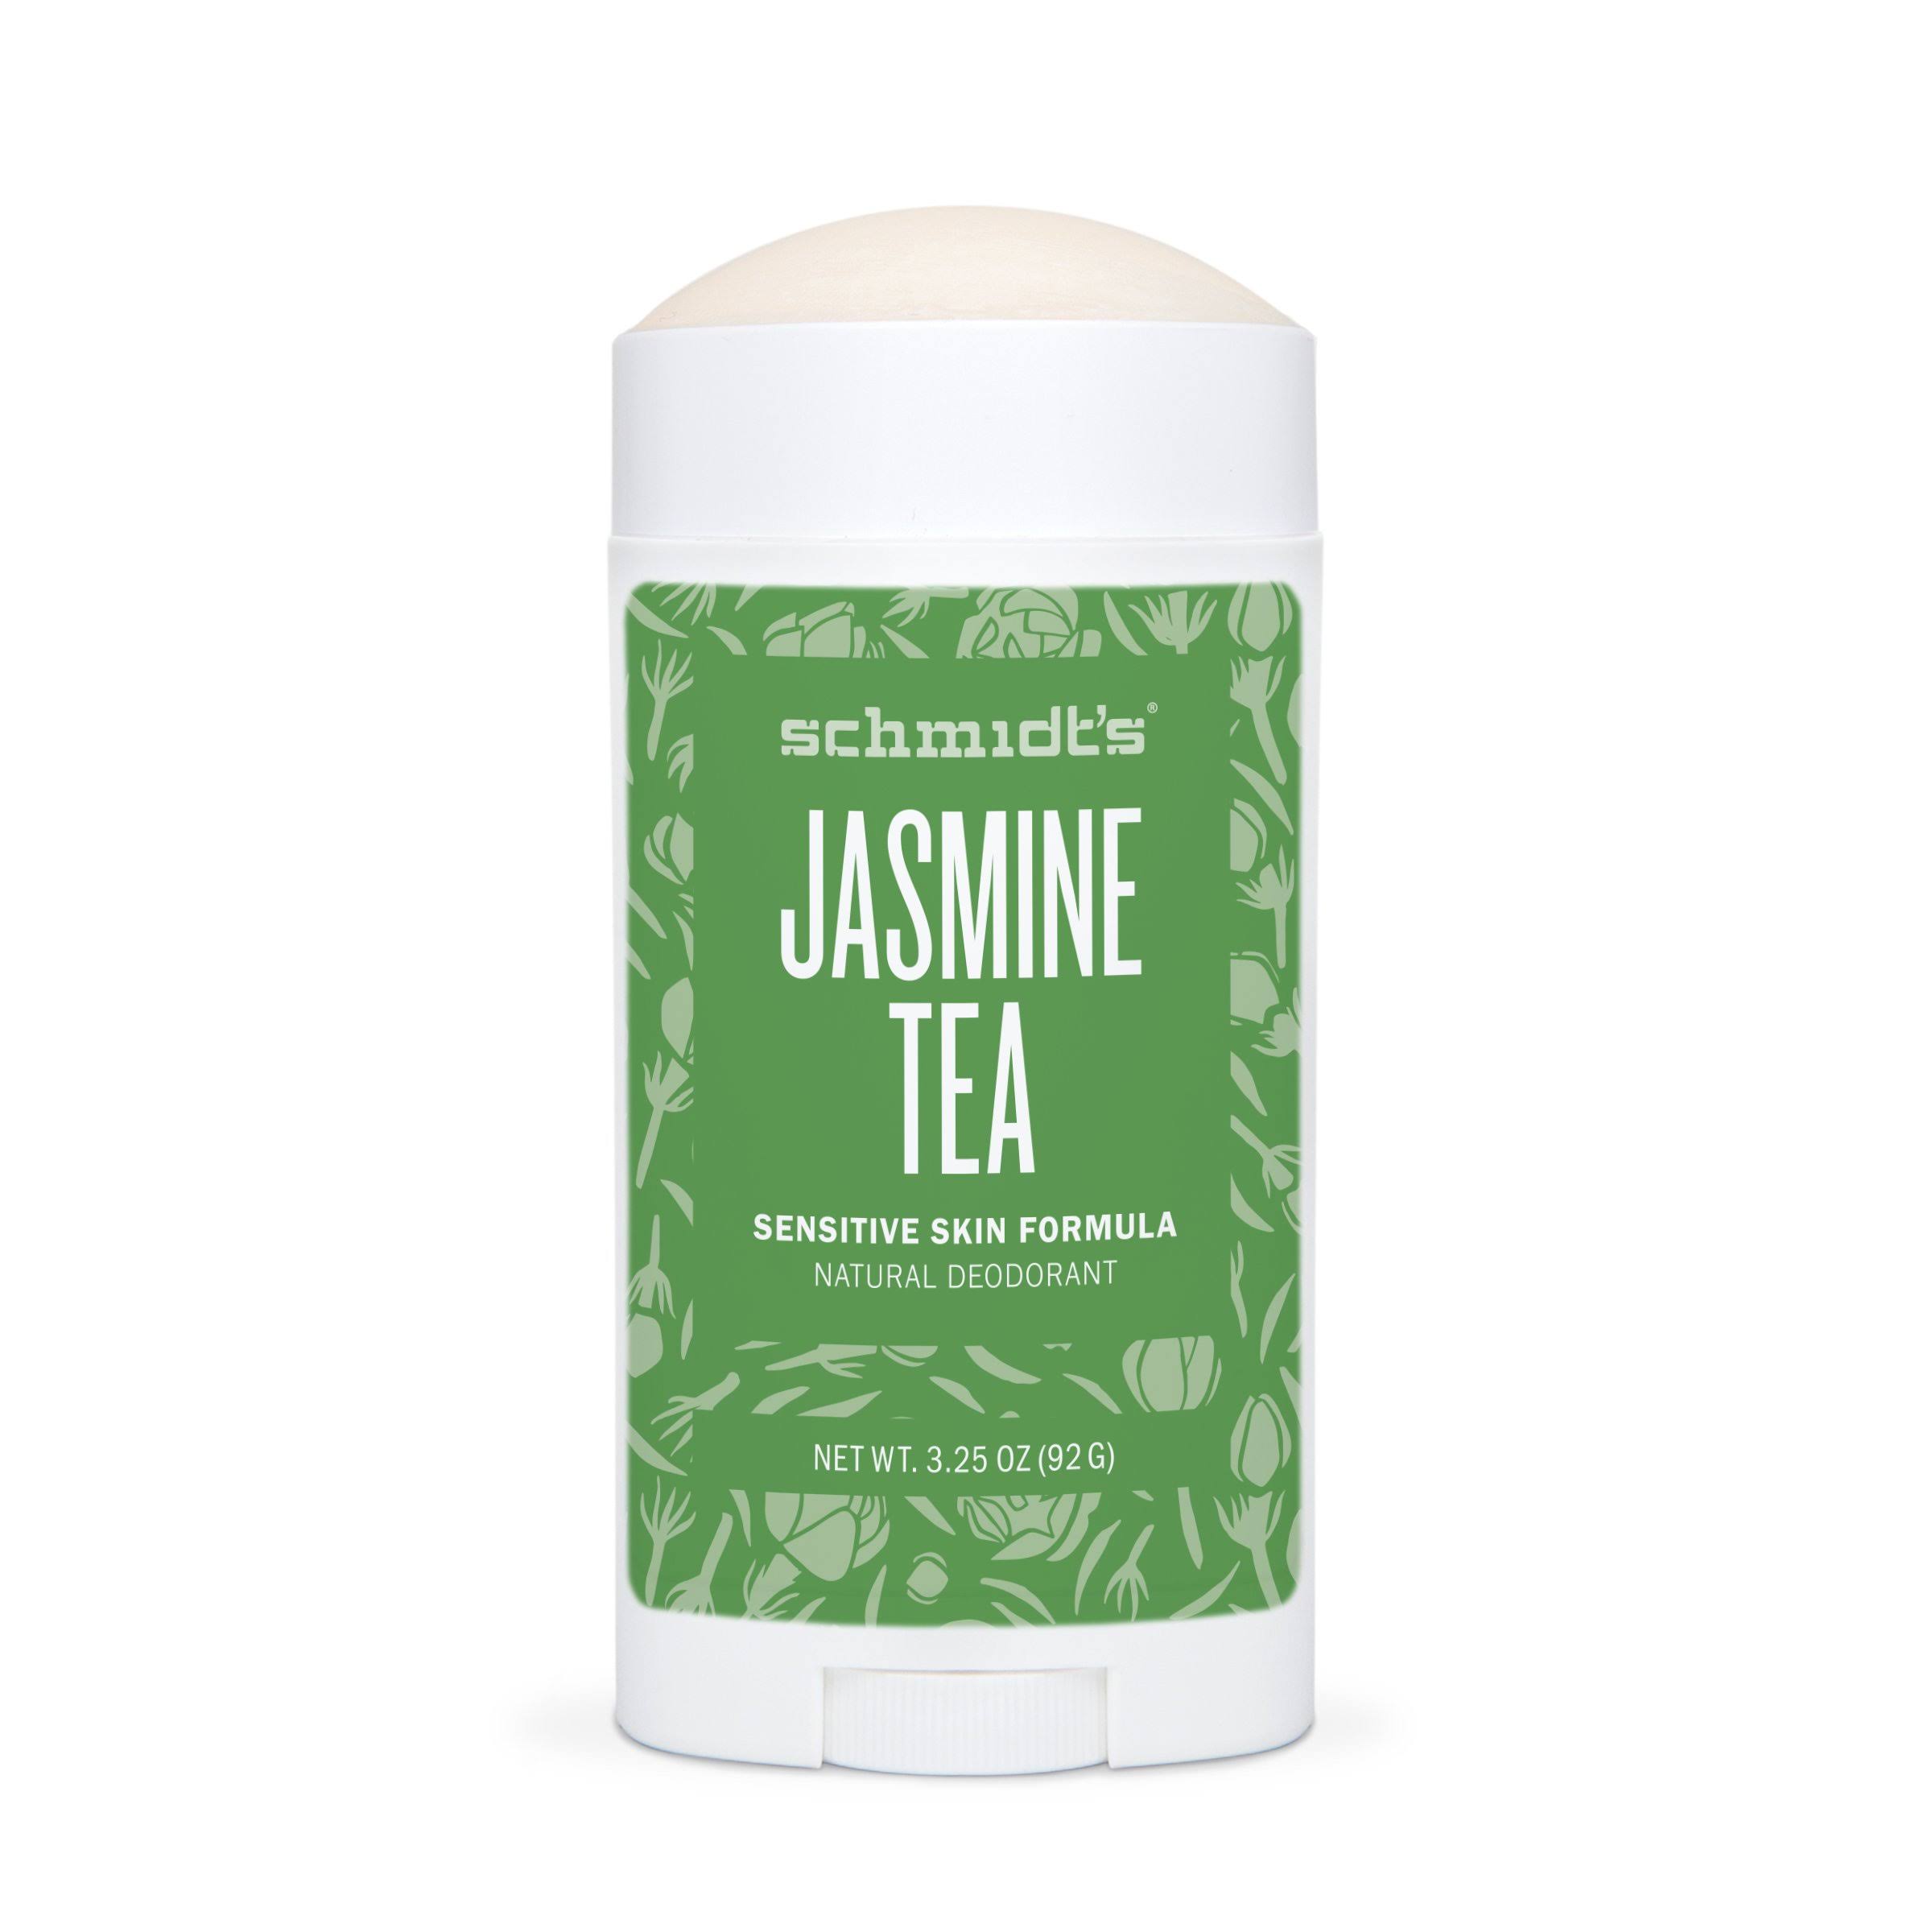 Schmidt's Sensitive Skin Formula Natural Deodorant - Jasmine Tea